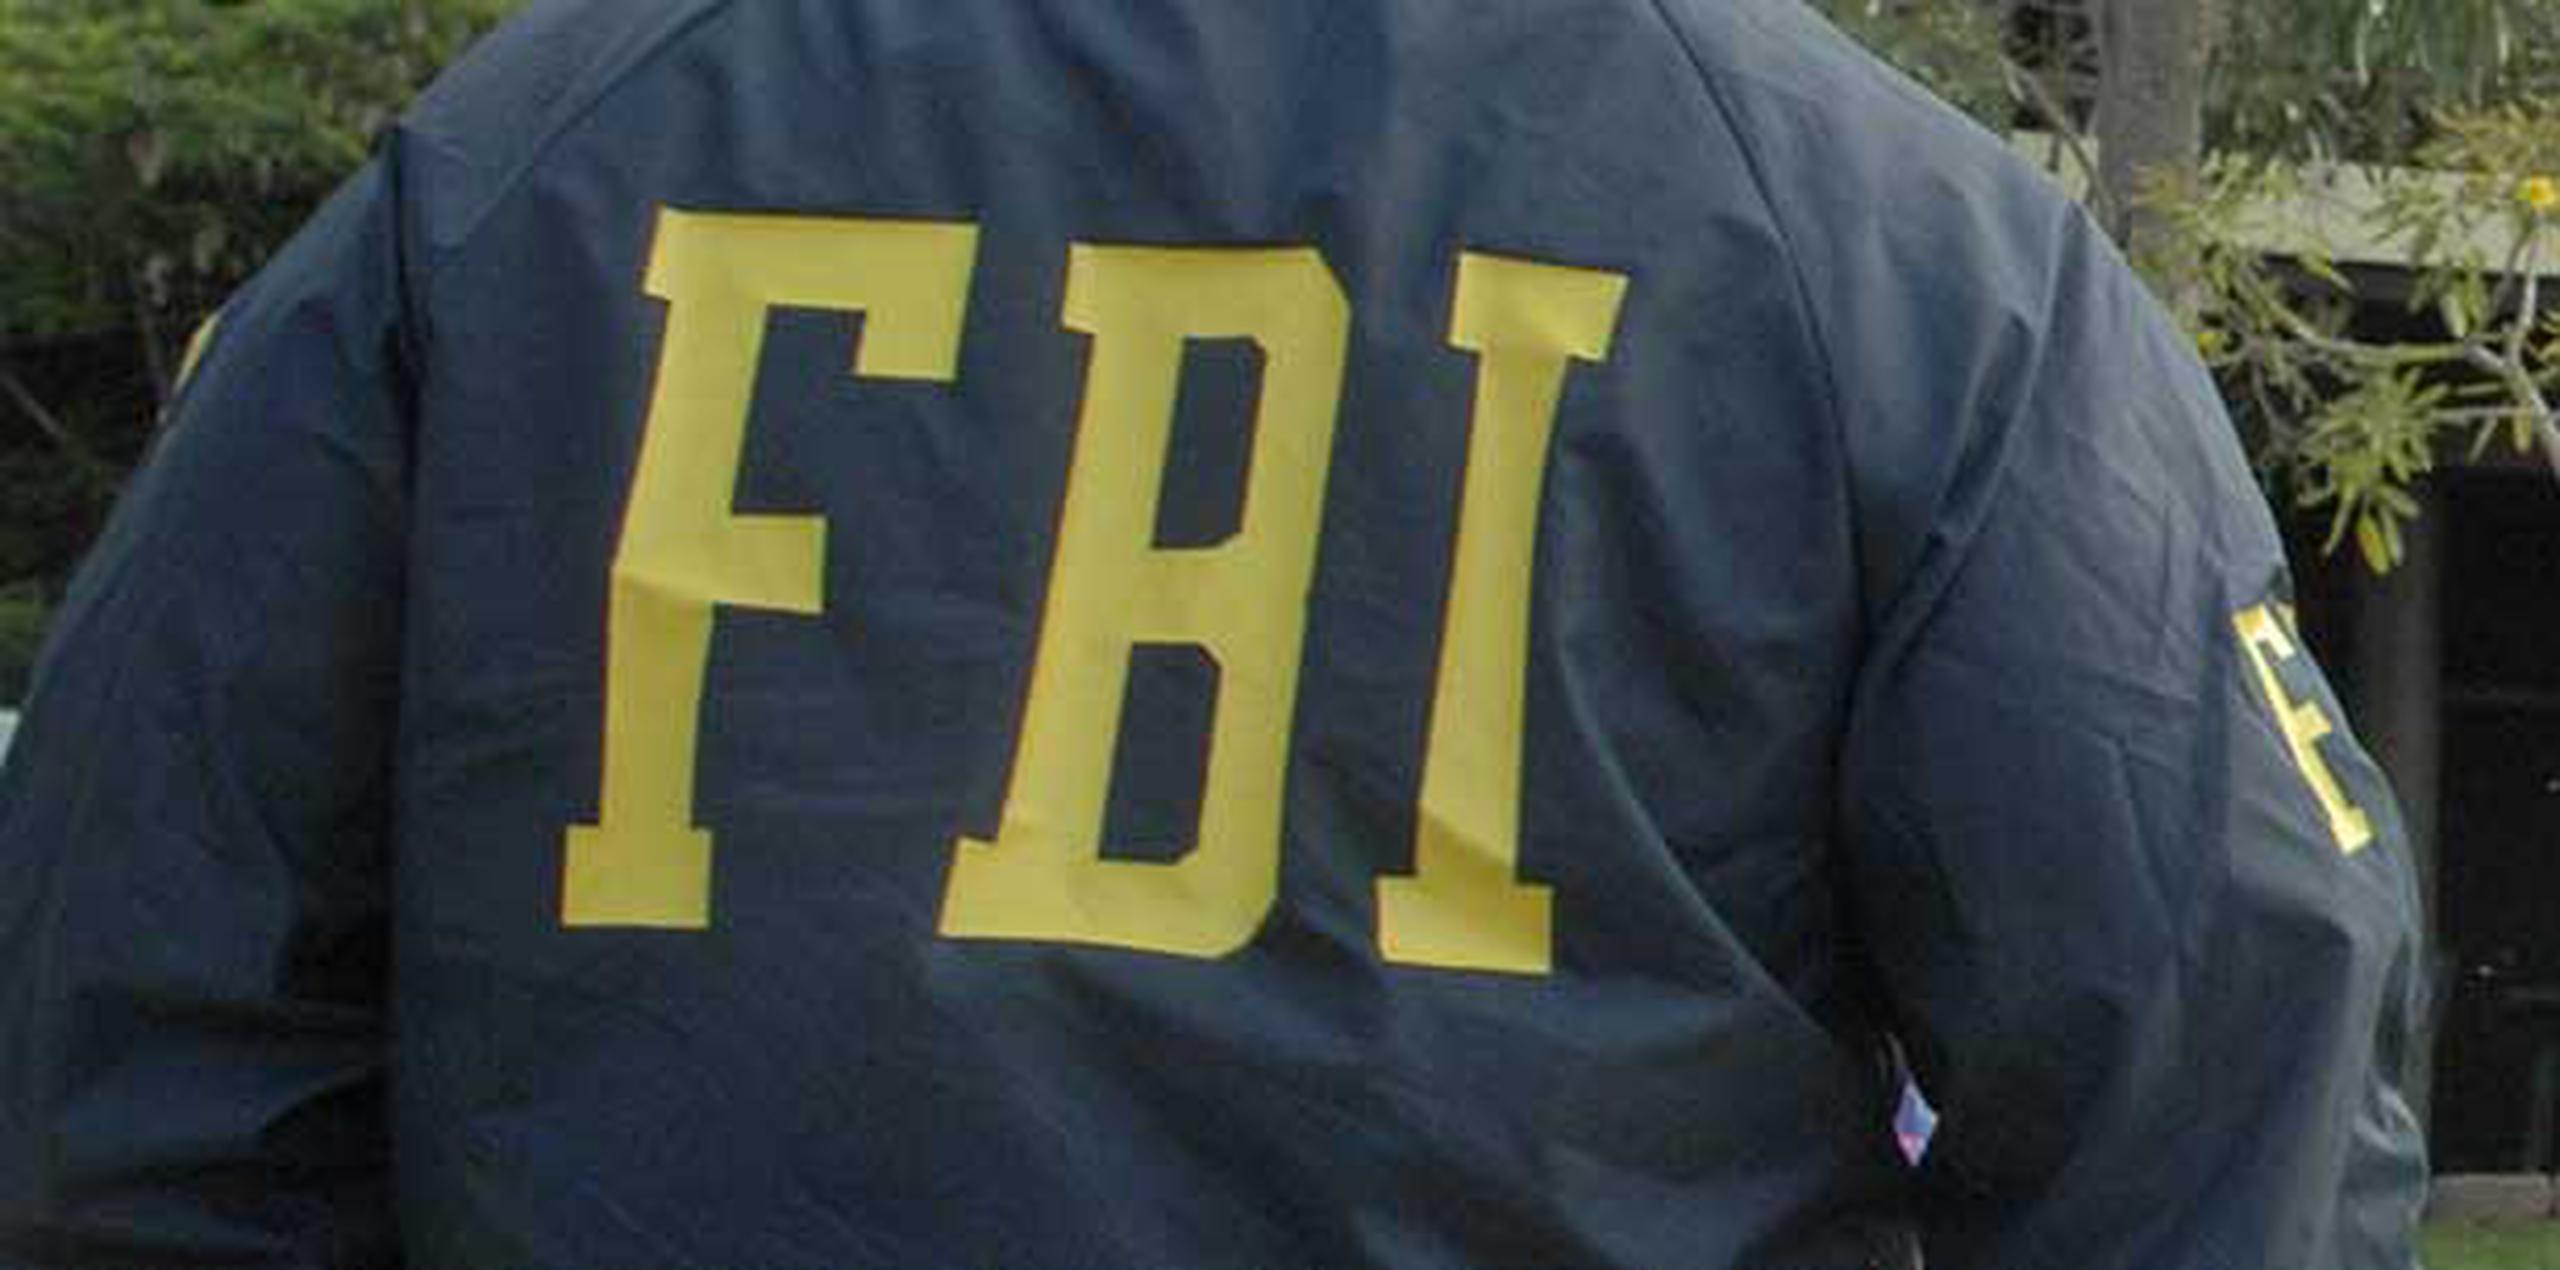 Agentes del Cuerpo Investigación Criminal de Bayamón la agente Eva Ríos, adscrita al FBI, se hicieron cargo de la investigación. (Archivo)